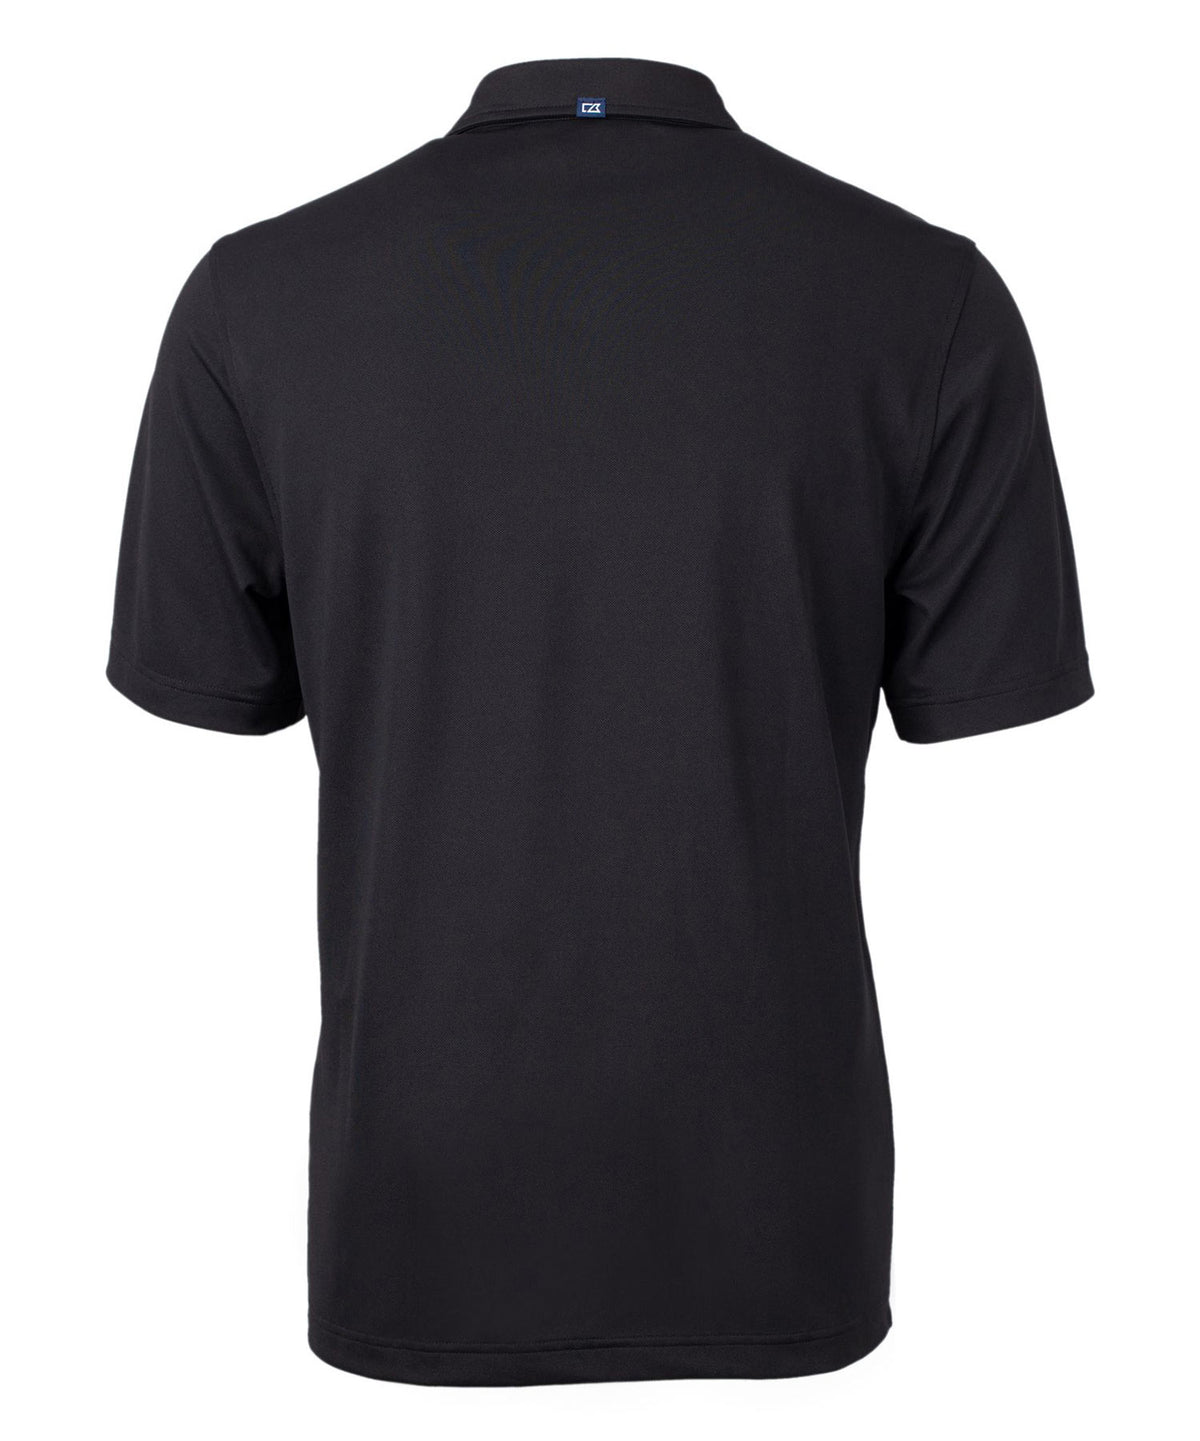 Cutter & Buck Green Bay Packers Short Sleeve Polo Knit Shirt, Men's Big & Tall